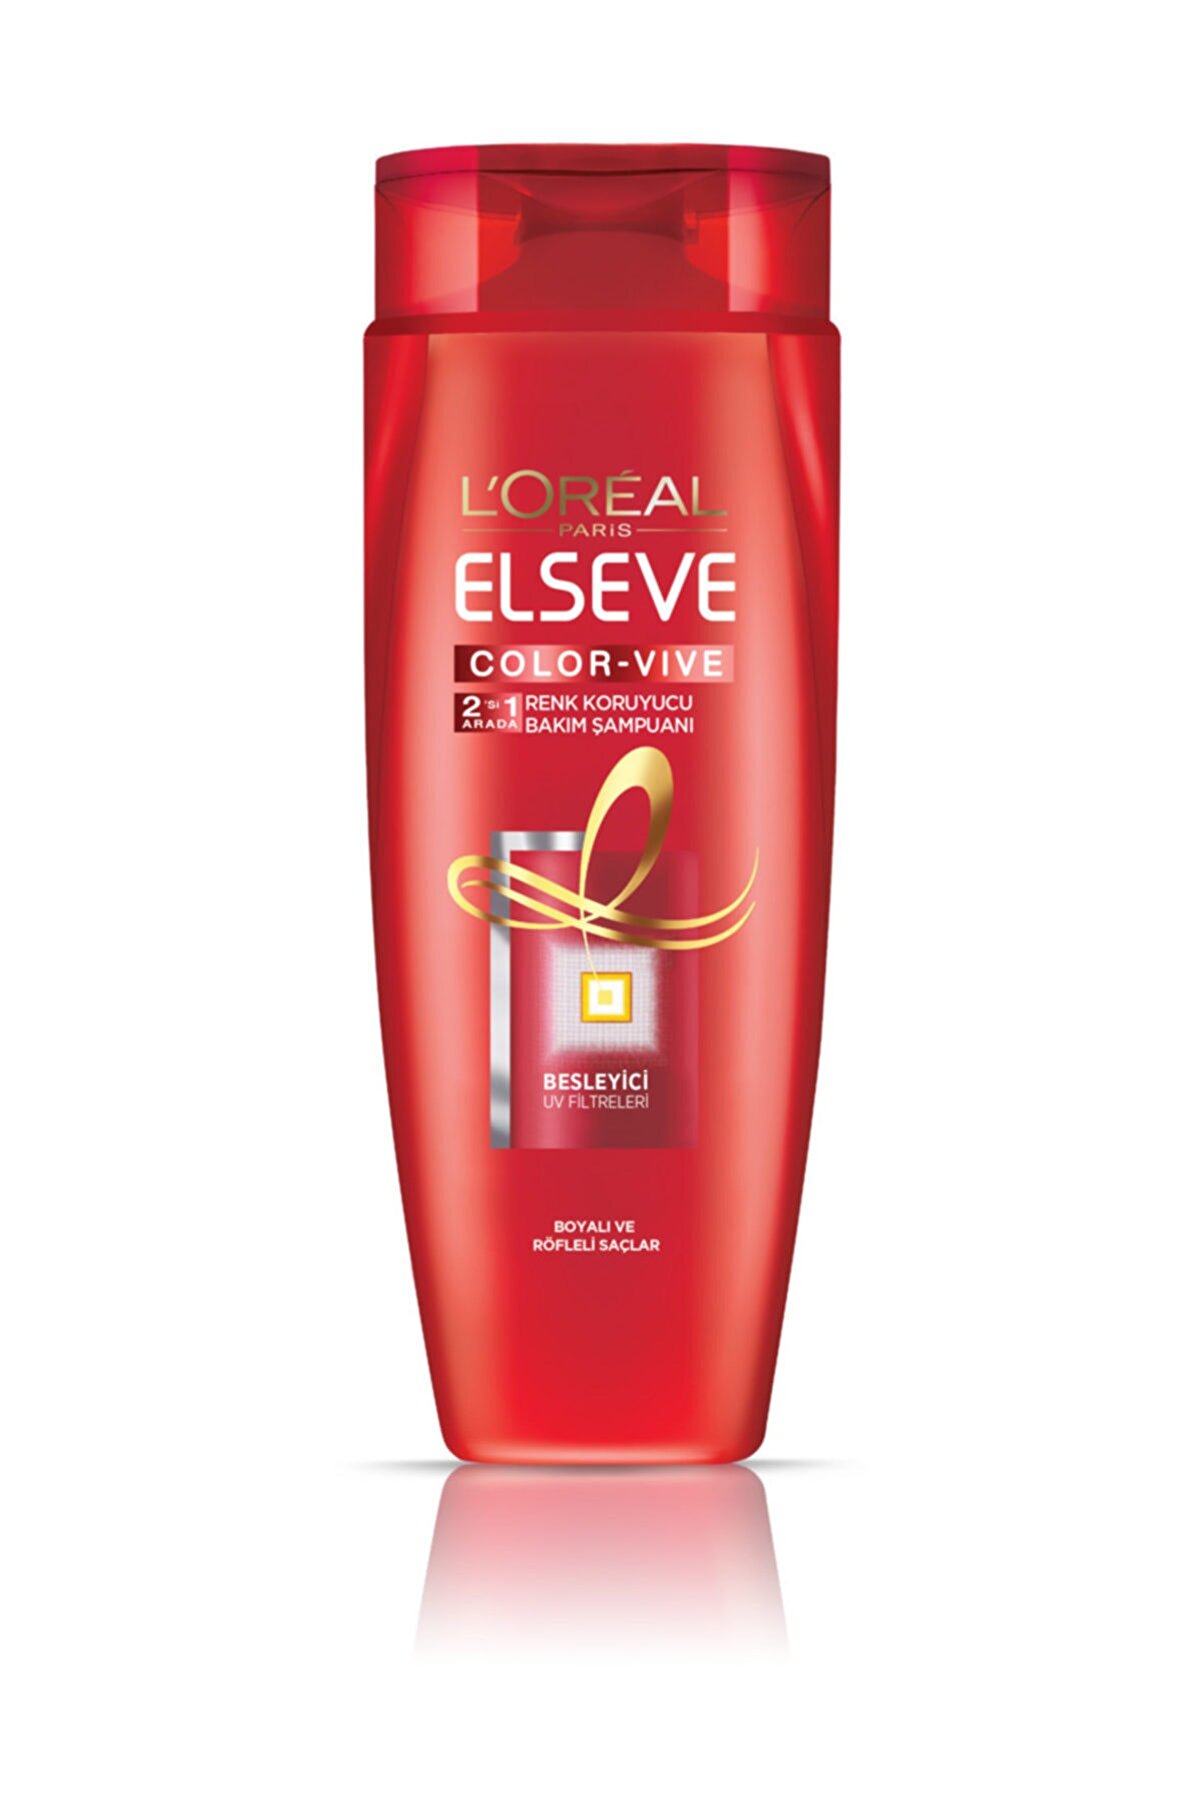 Elseve Colorvive Renk Koruyucu Bakım Şampuanı 2'si 1 Arada 550 ml 3600523571628